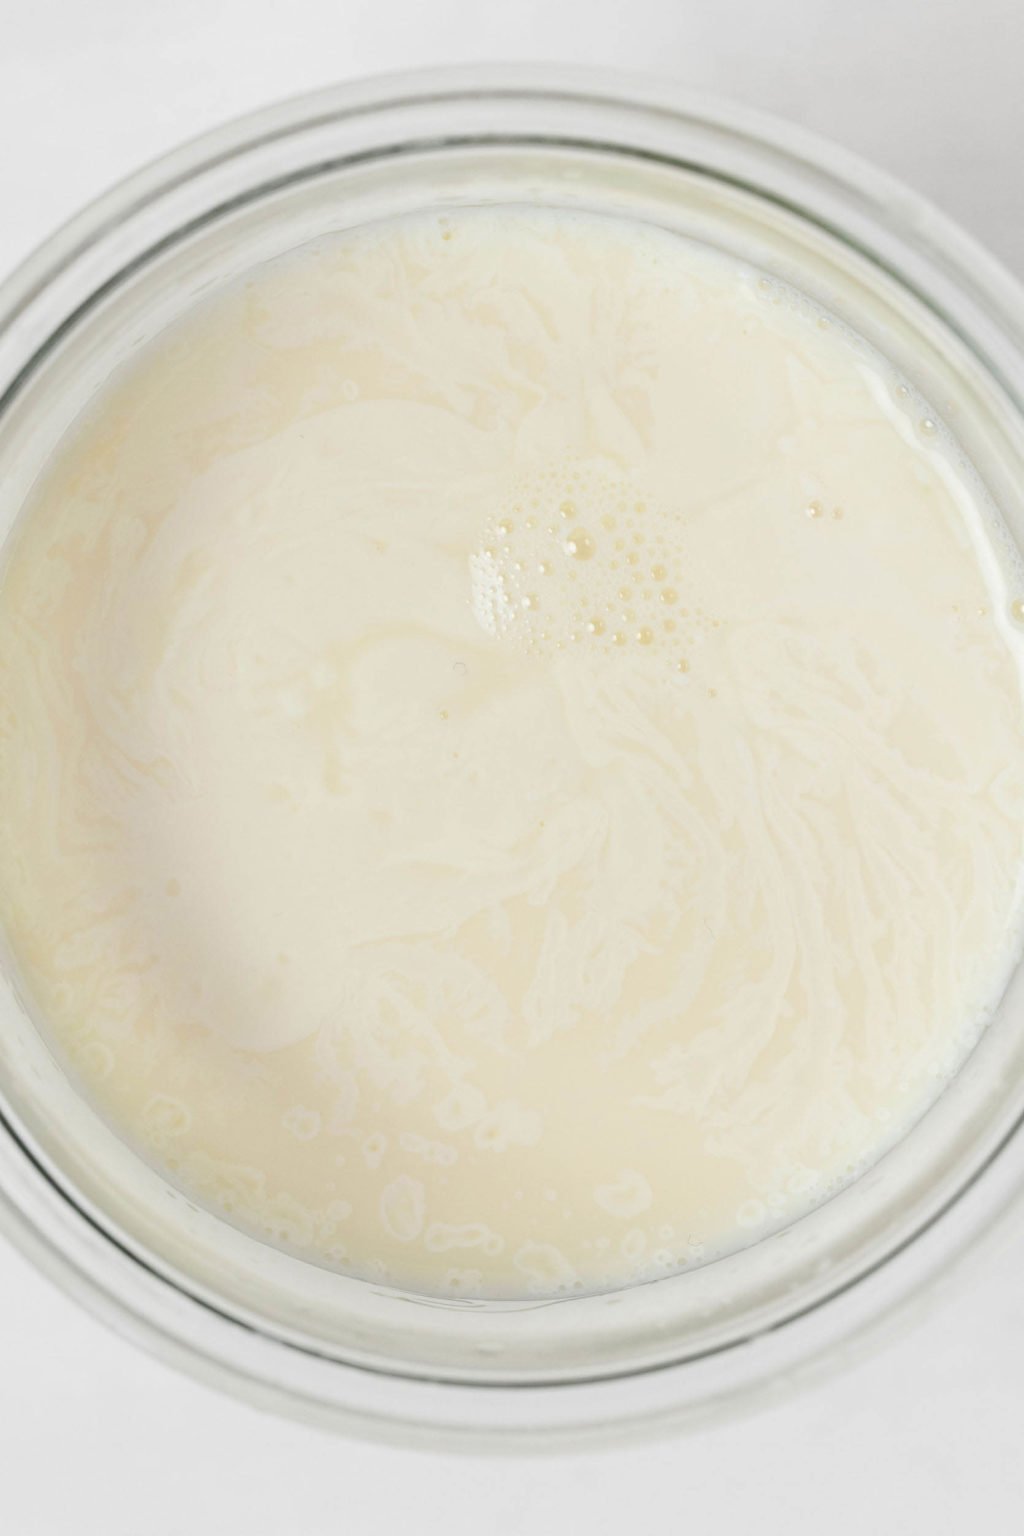 Une image ci-dessus de lait dans un bol en verre.